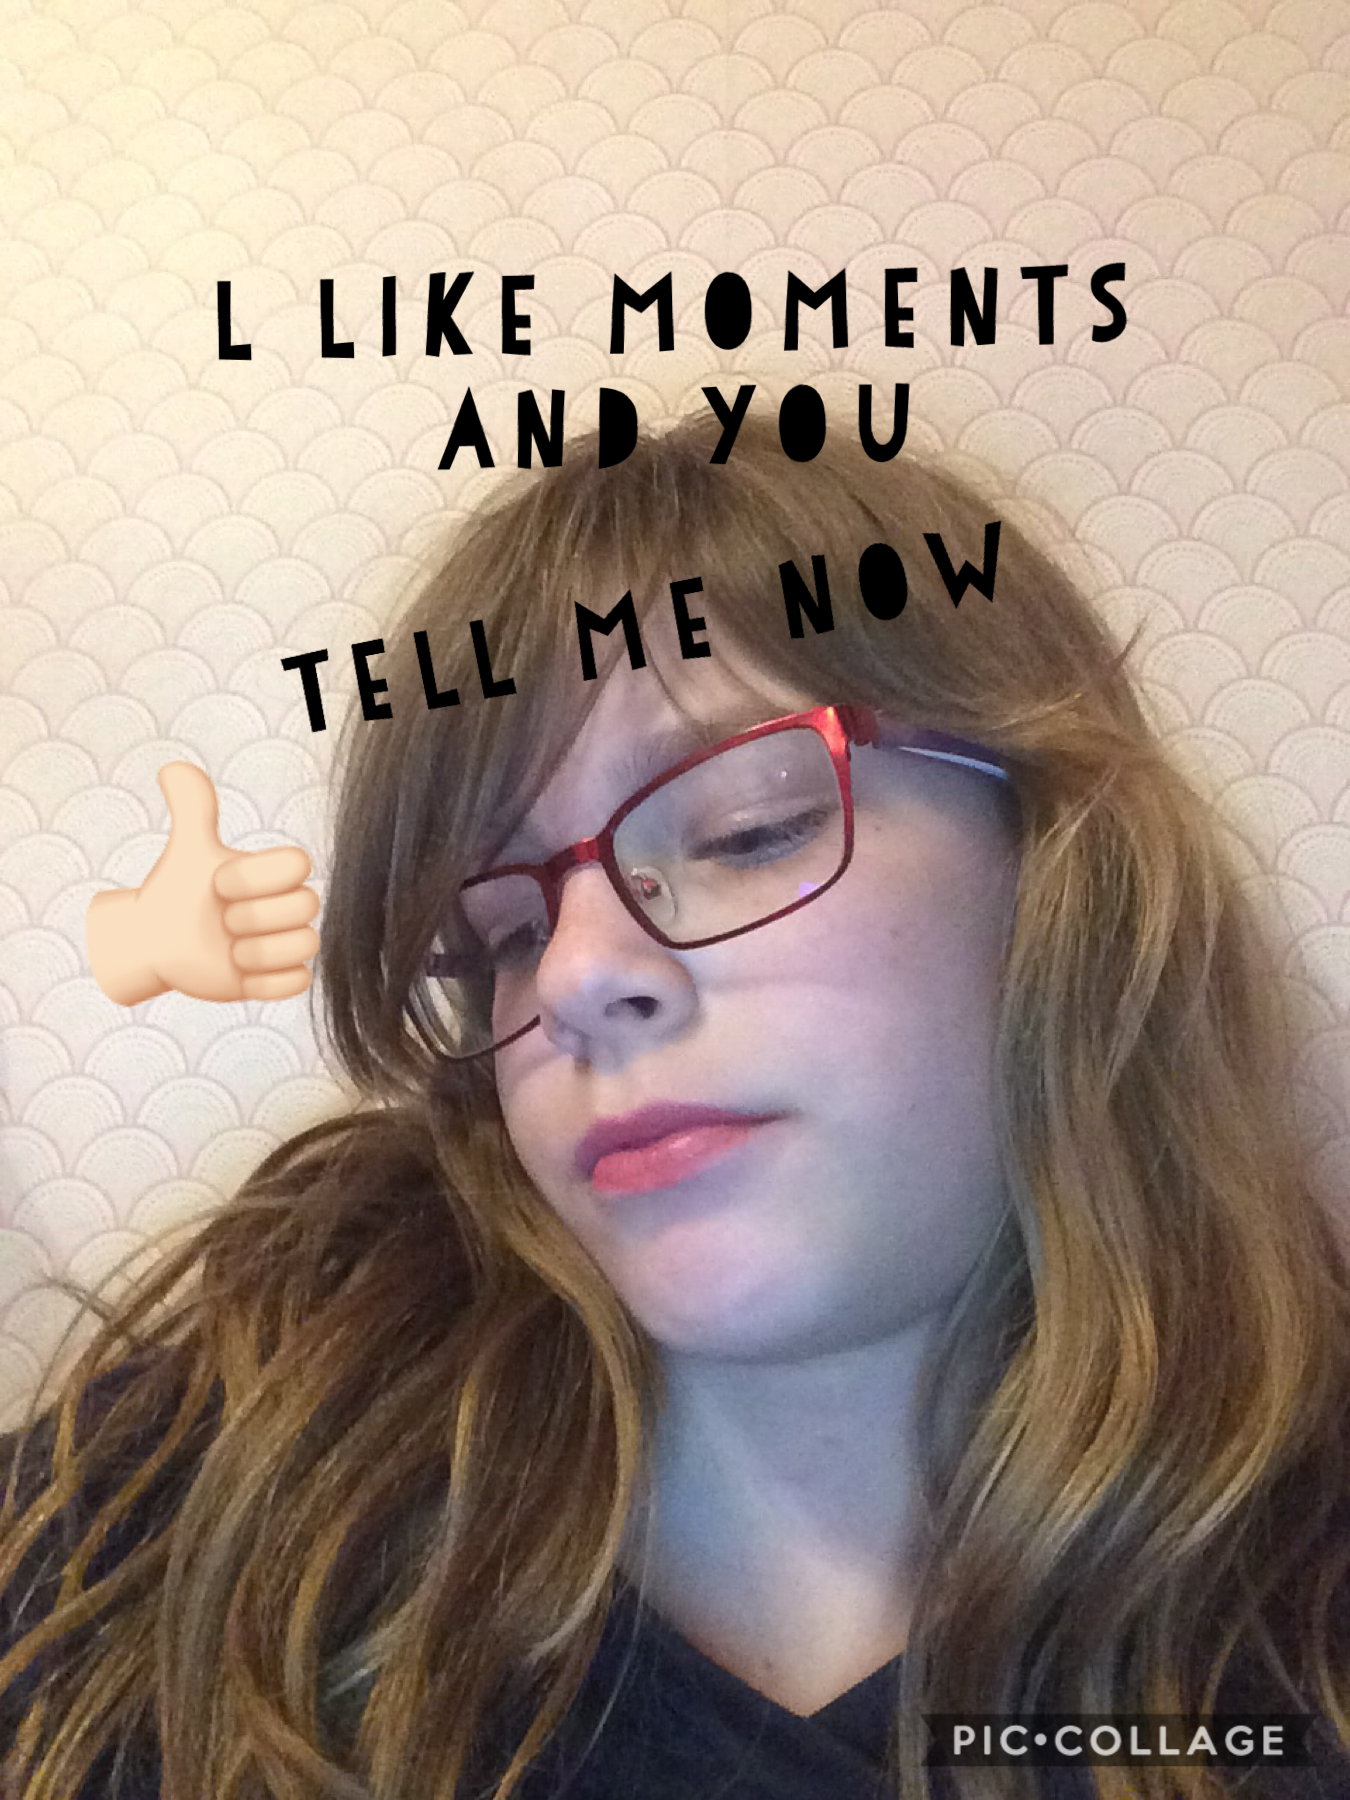 like you moments?